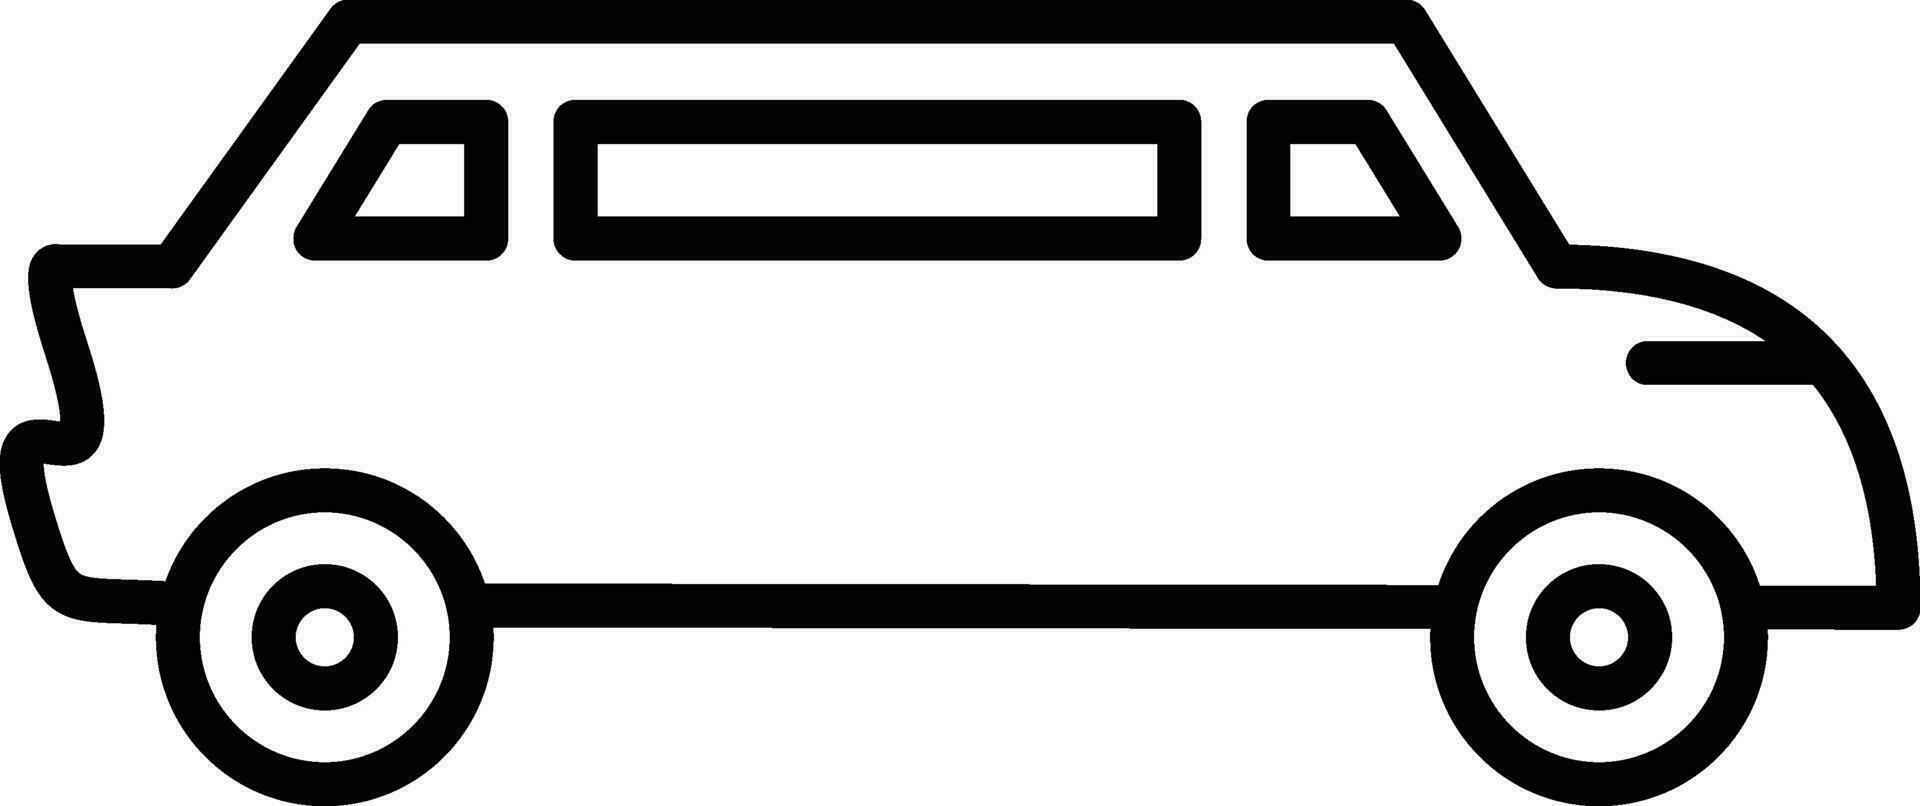 limousine vektor ikon